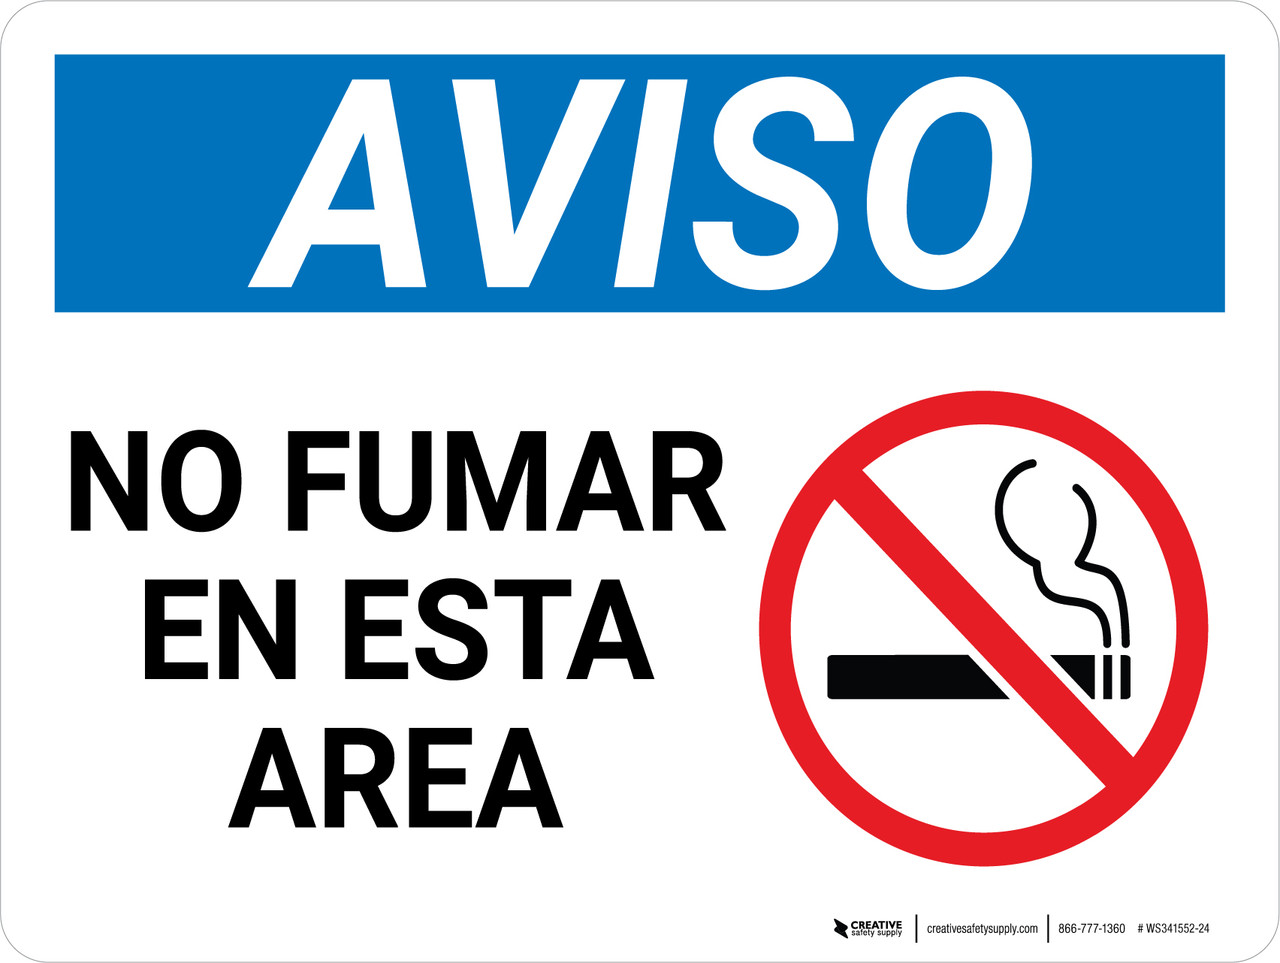 Aviso - Prohibido Fumar en esta Zona Horizontal - Wall Sign